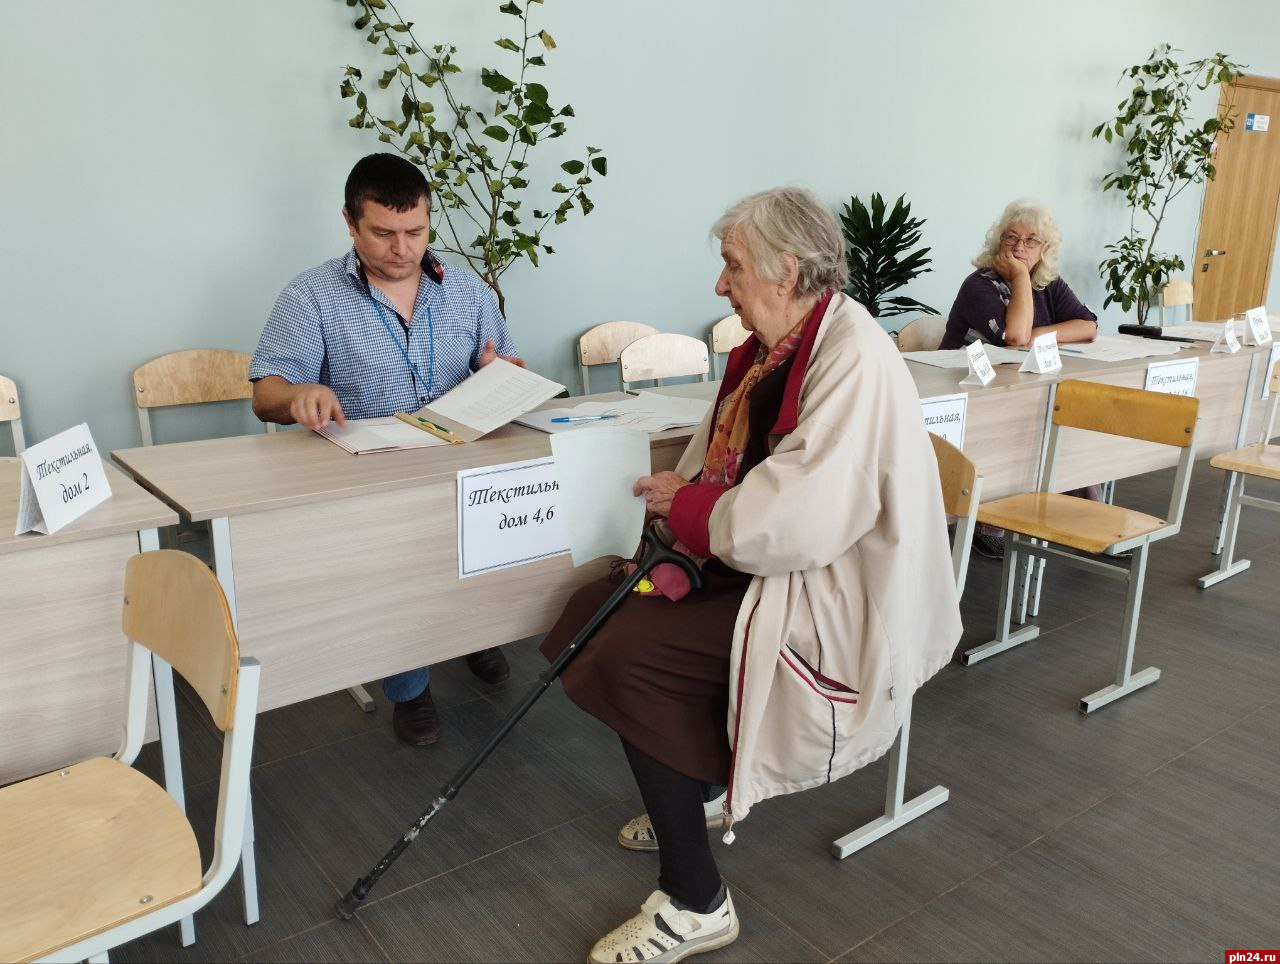 Результаты выборов в псковской области. Выборы президента в Пскове на фото.